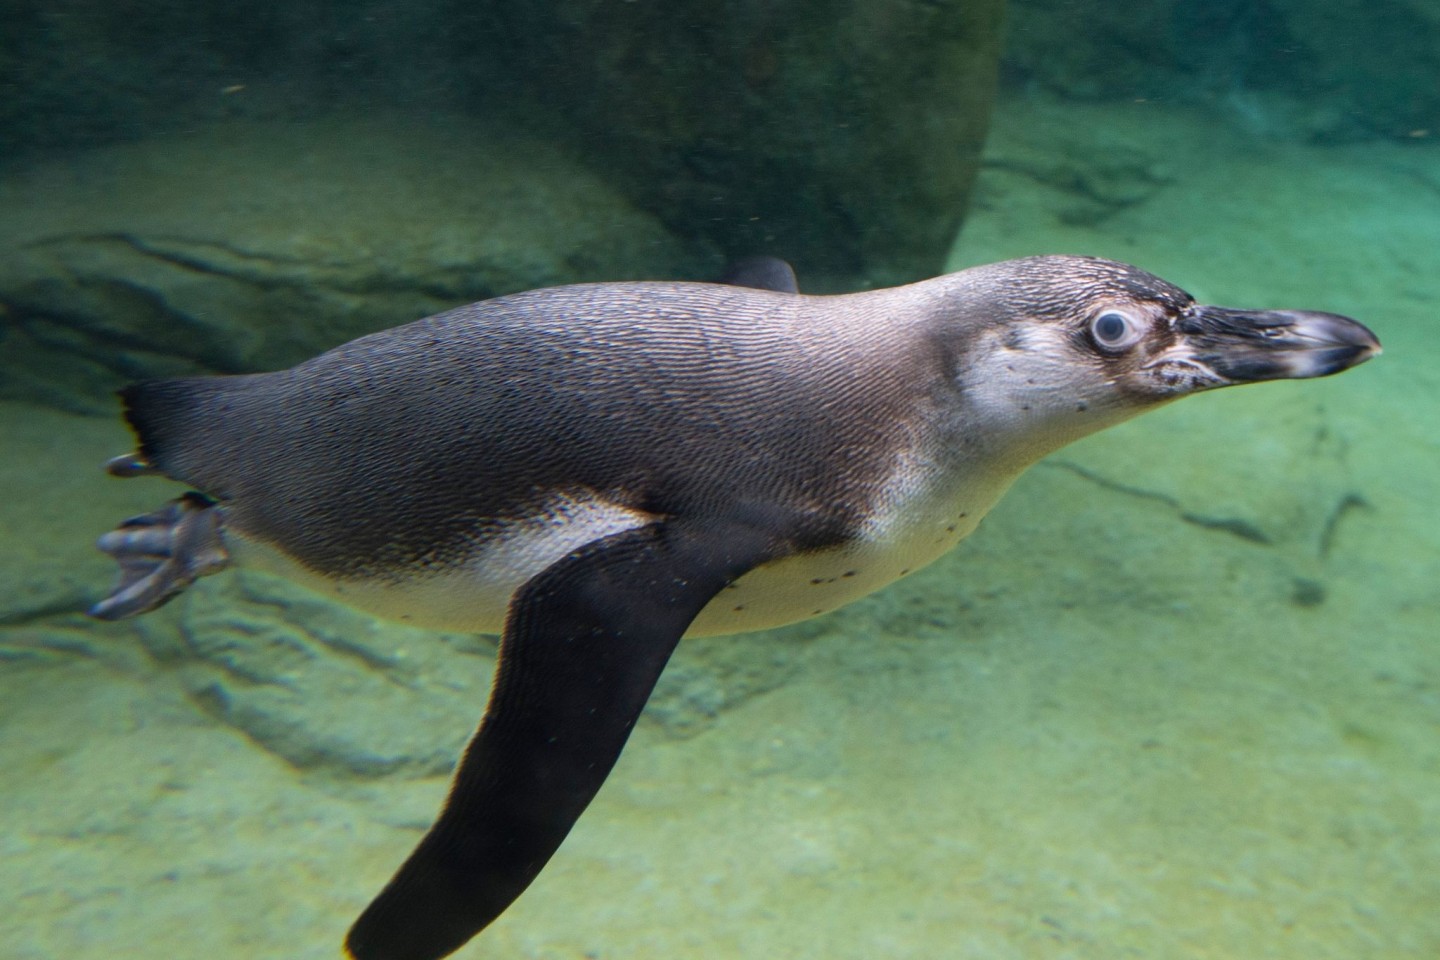 Pinguin verschluckt Brillenbügel - auf Weg der Besserung